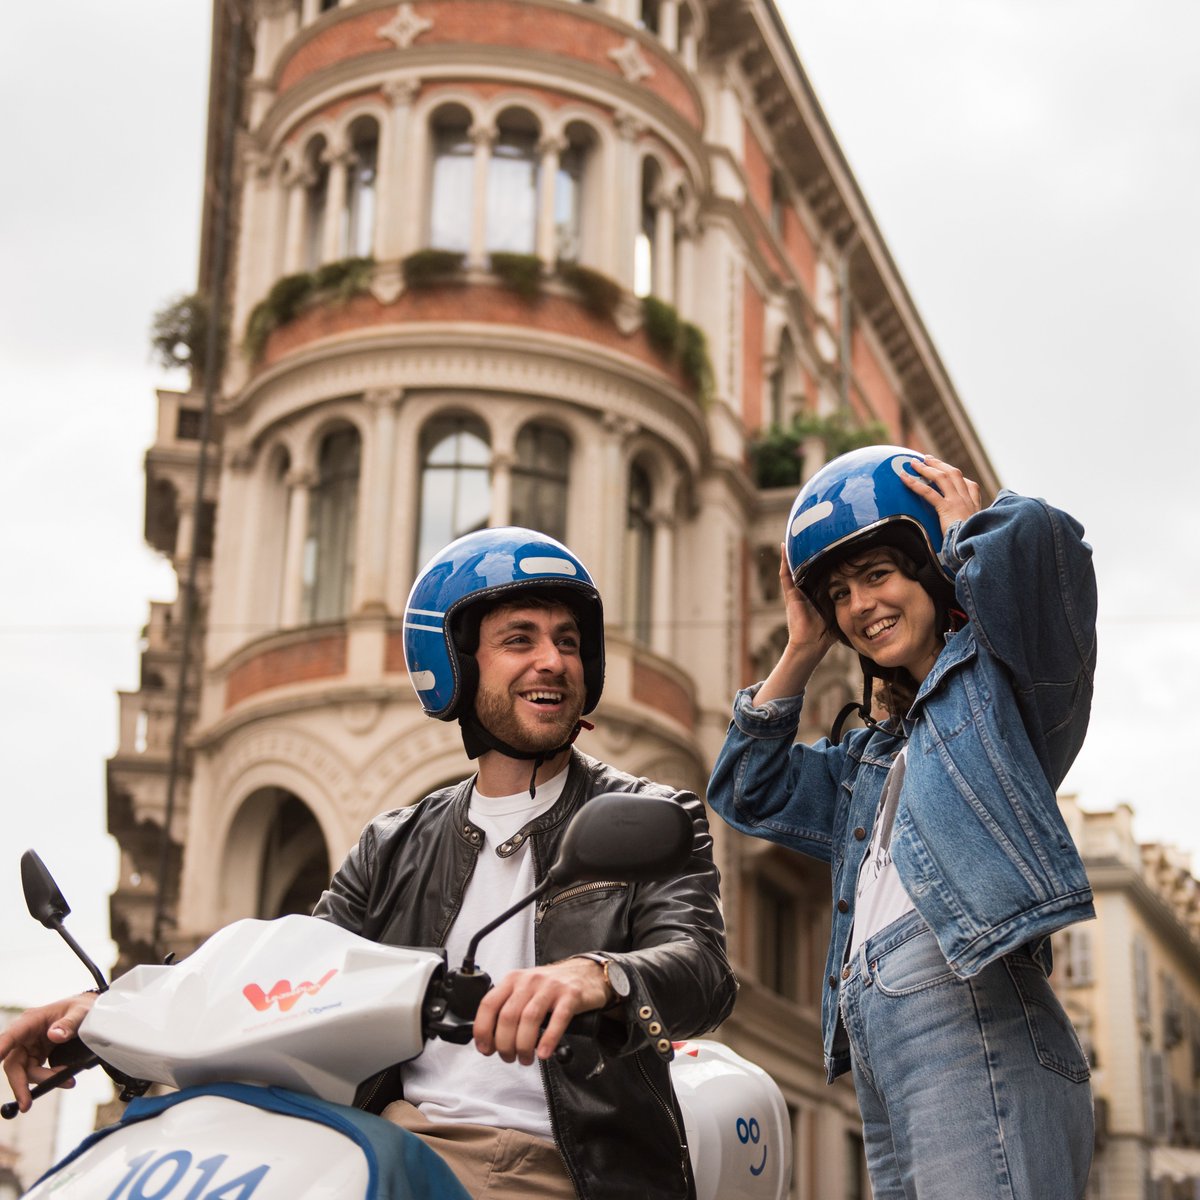 Da più di una settimana Cityscoot è disponibile a #Torino! ⁣
Un enorme grazie ai 500 nuovi #Cityriders torinesi che hanno guidato già 2000 volte💙⁣

Chi viaggia in elettrico ha una 'marcia' in più 🌱